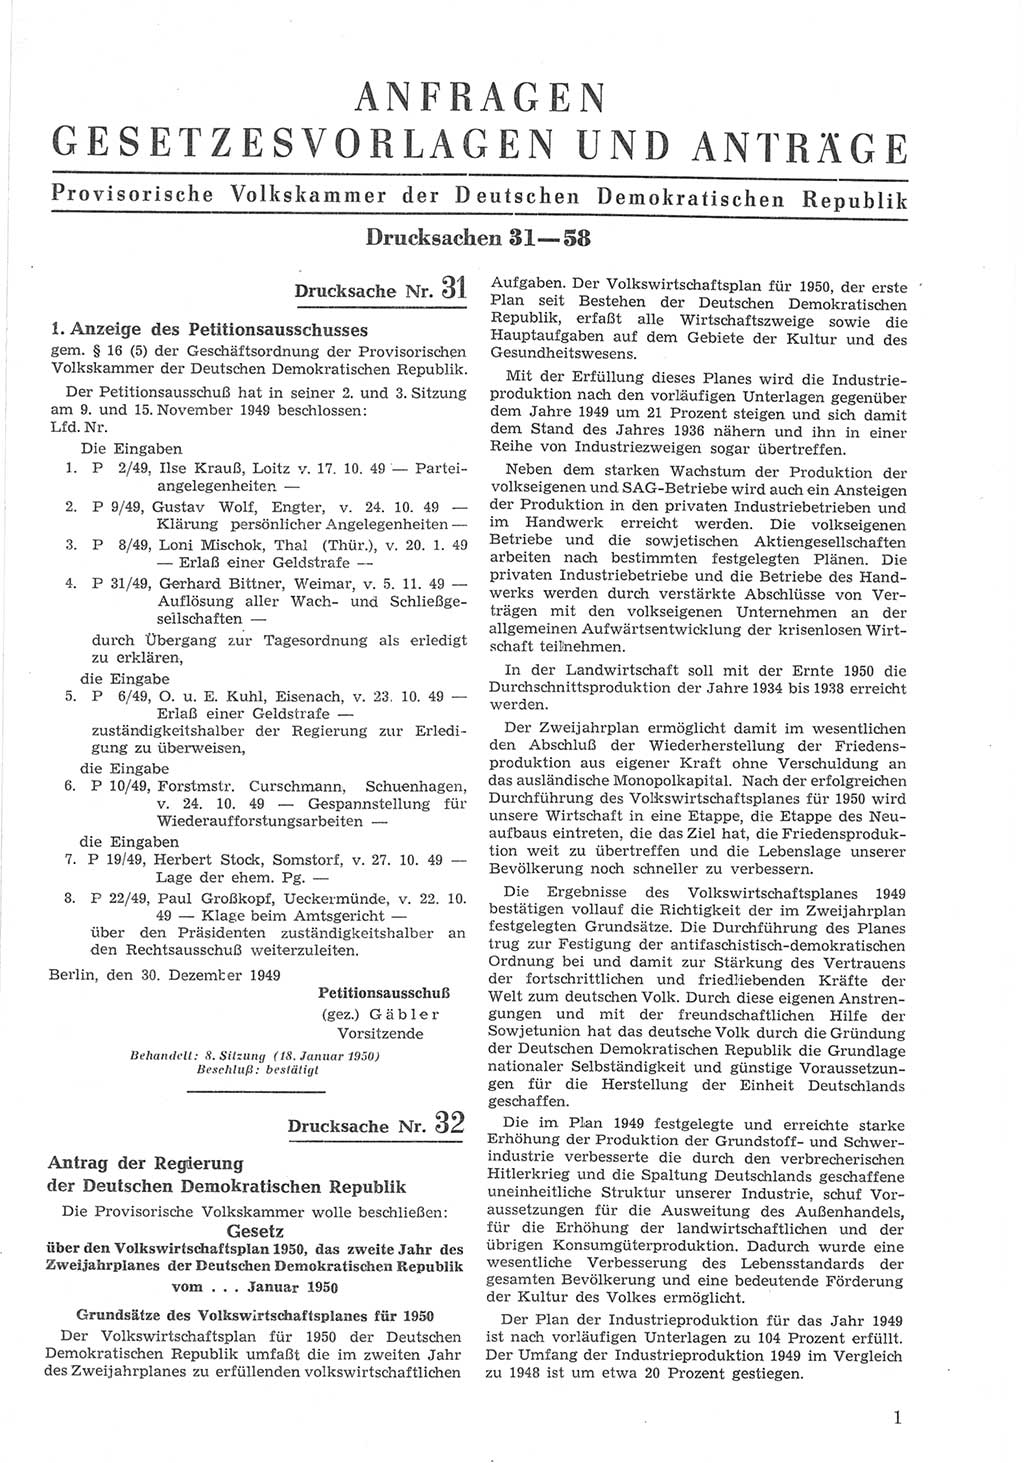 Provisorische Volkskammer (VK) der Deutschen Demokratischen Republik (DDR) 1949-1950, Dokument 601 (Prov. VK DDR 1949-1950, Dok. 601)